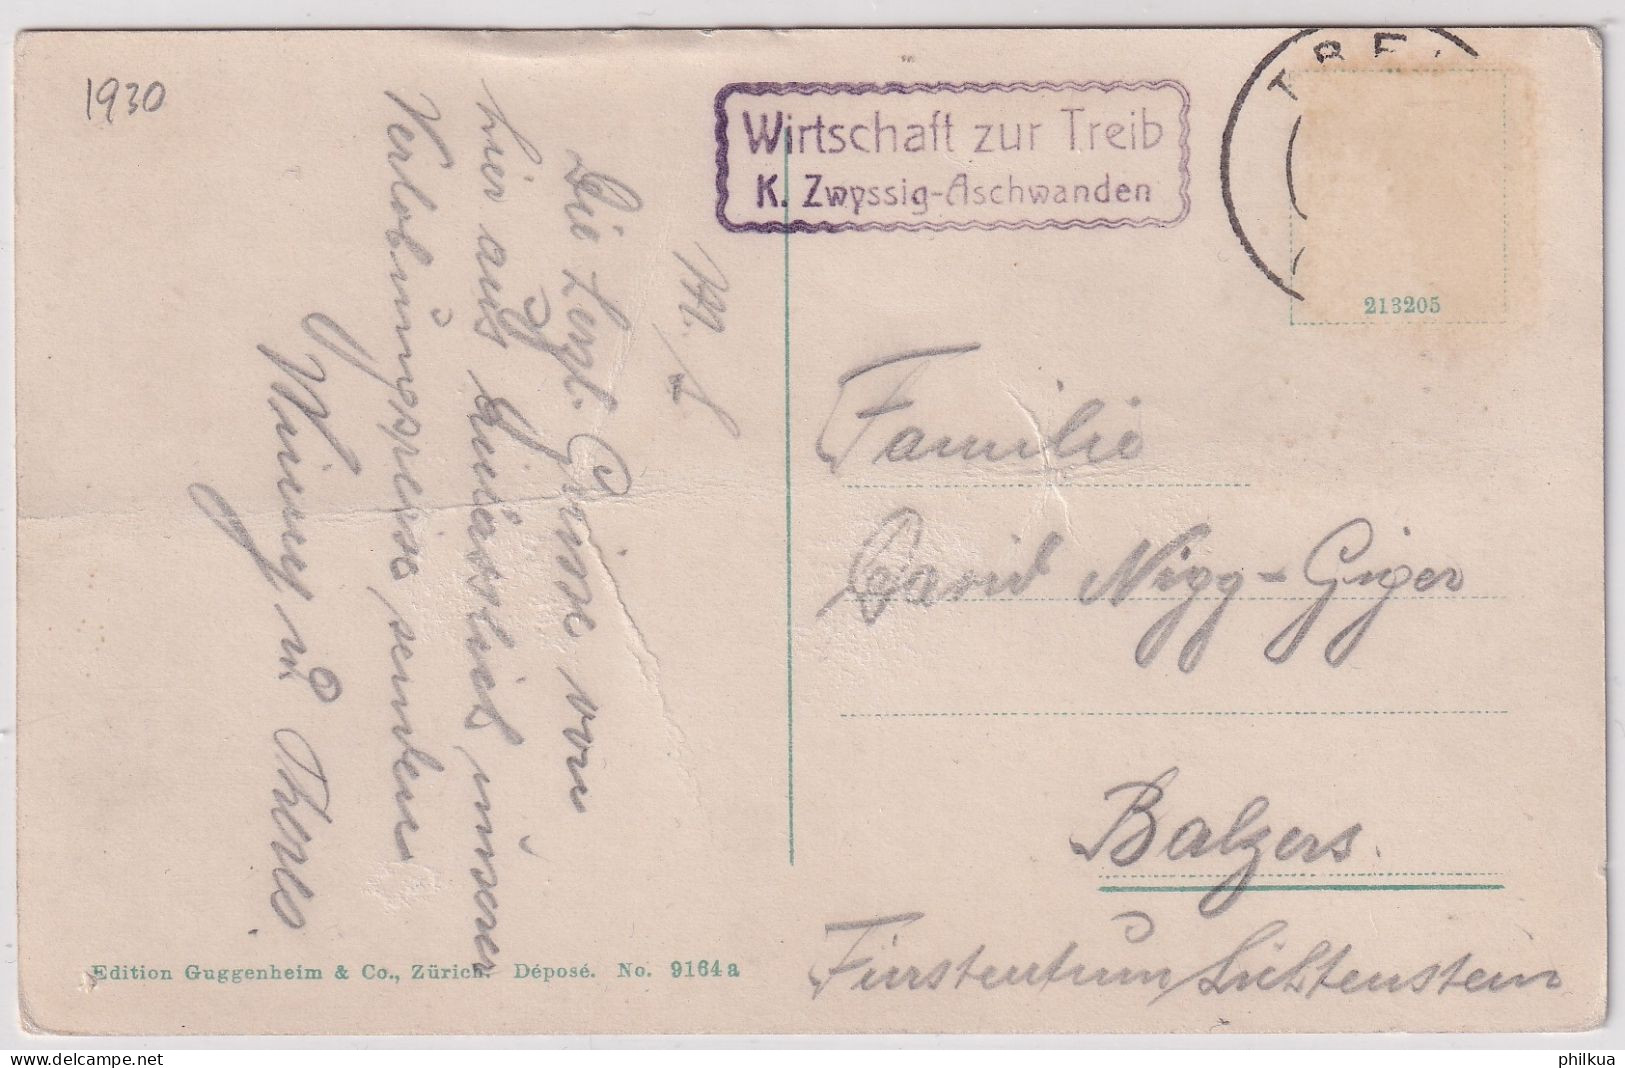 Wirtschaft - Treib Am Vierwaldstättersee - Mit Stempel Wirtschaft Zur Treib K. Zwyssig-Aschwanden - 1930 - Seelisberg